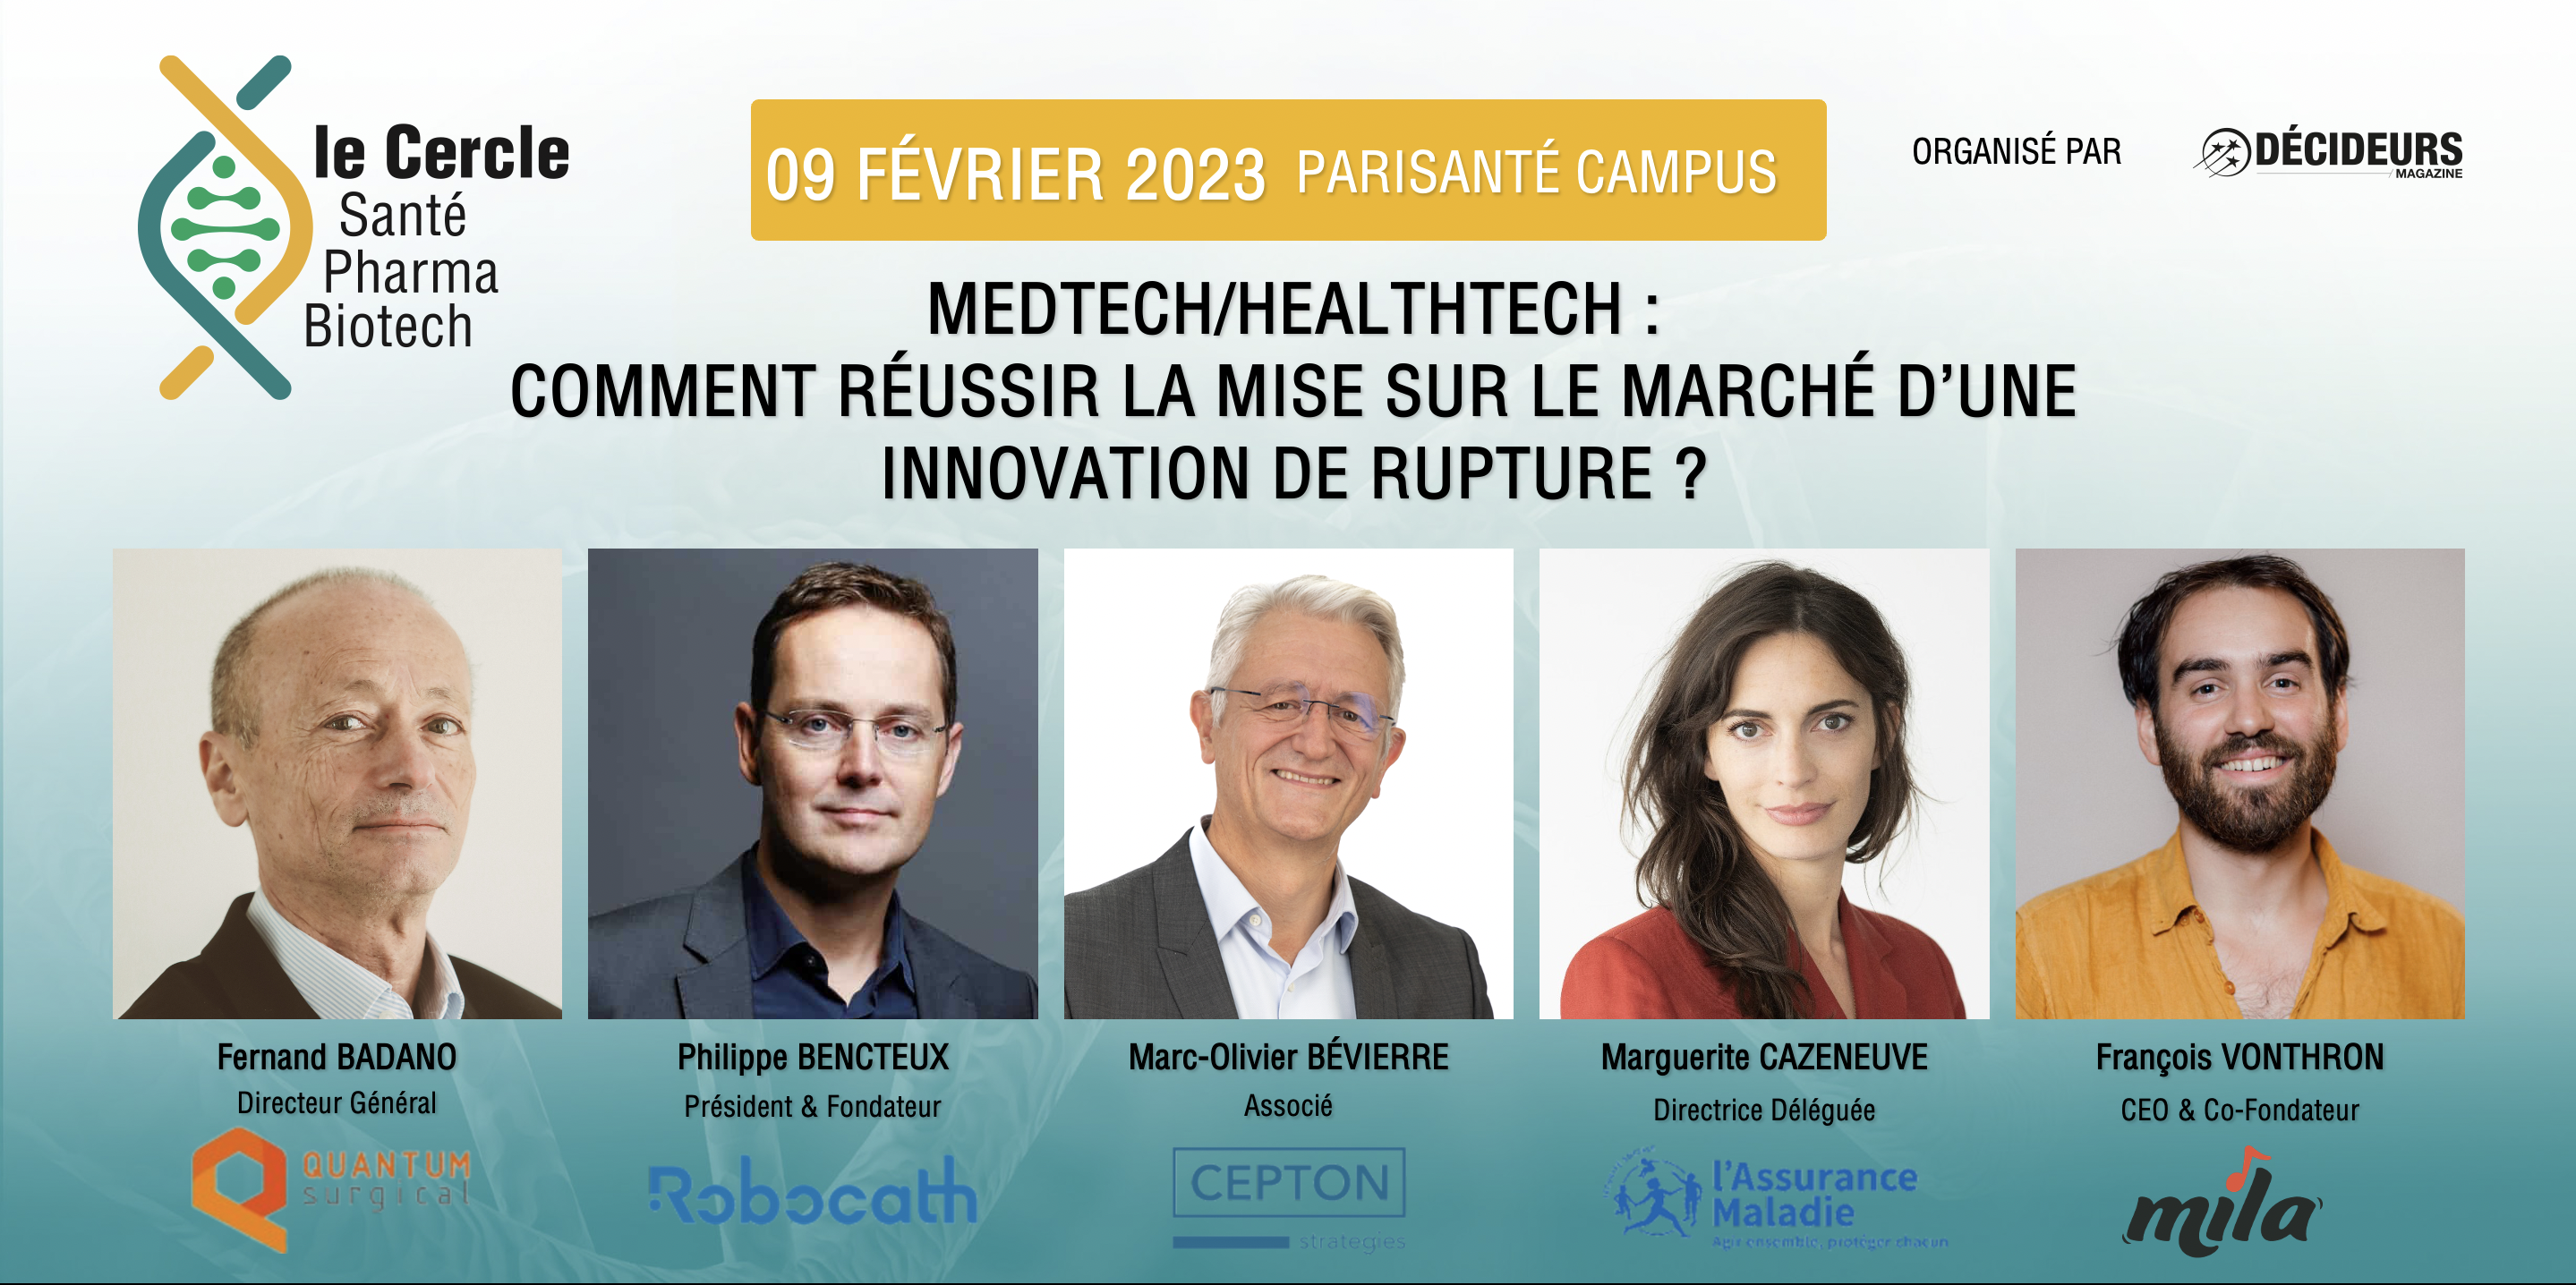 MedTech/HealthTech : comment réussir la mise sur le marché d'une innovation de rupture ? 